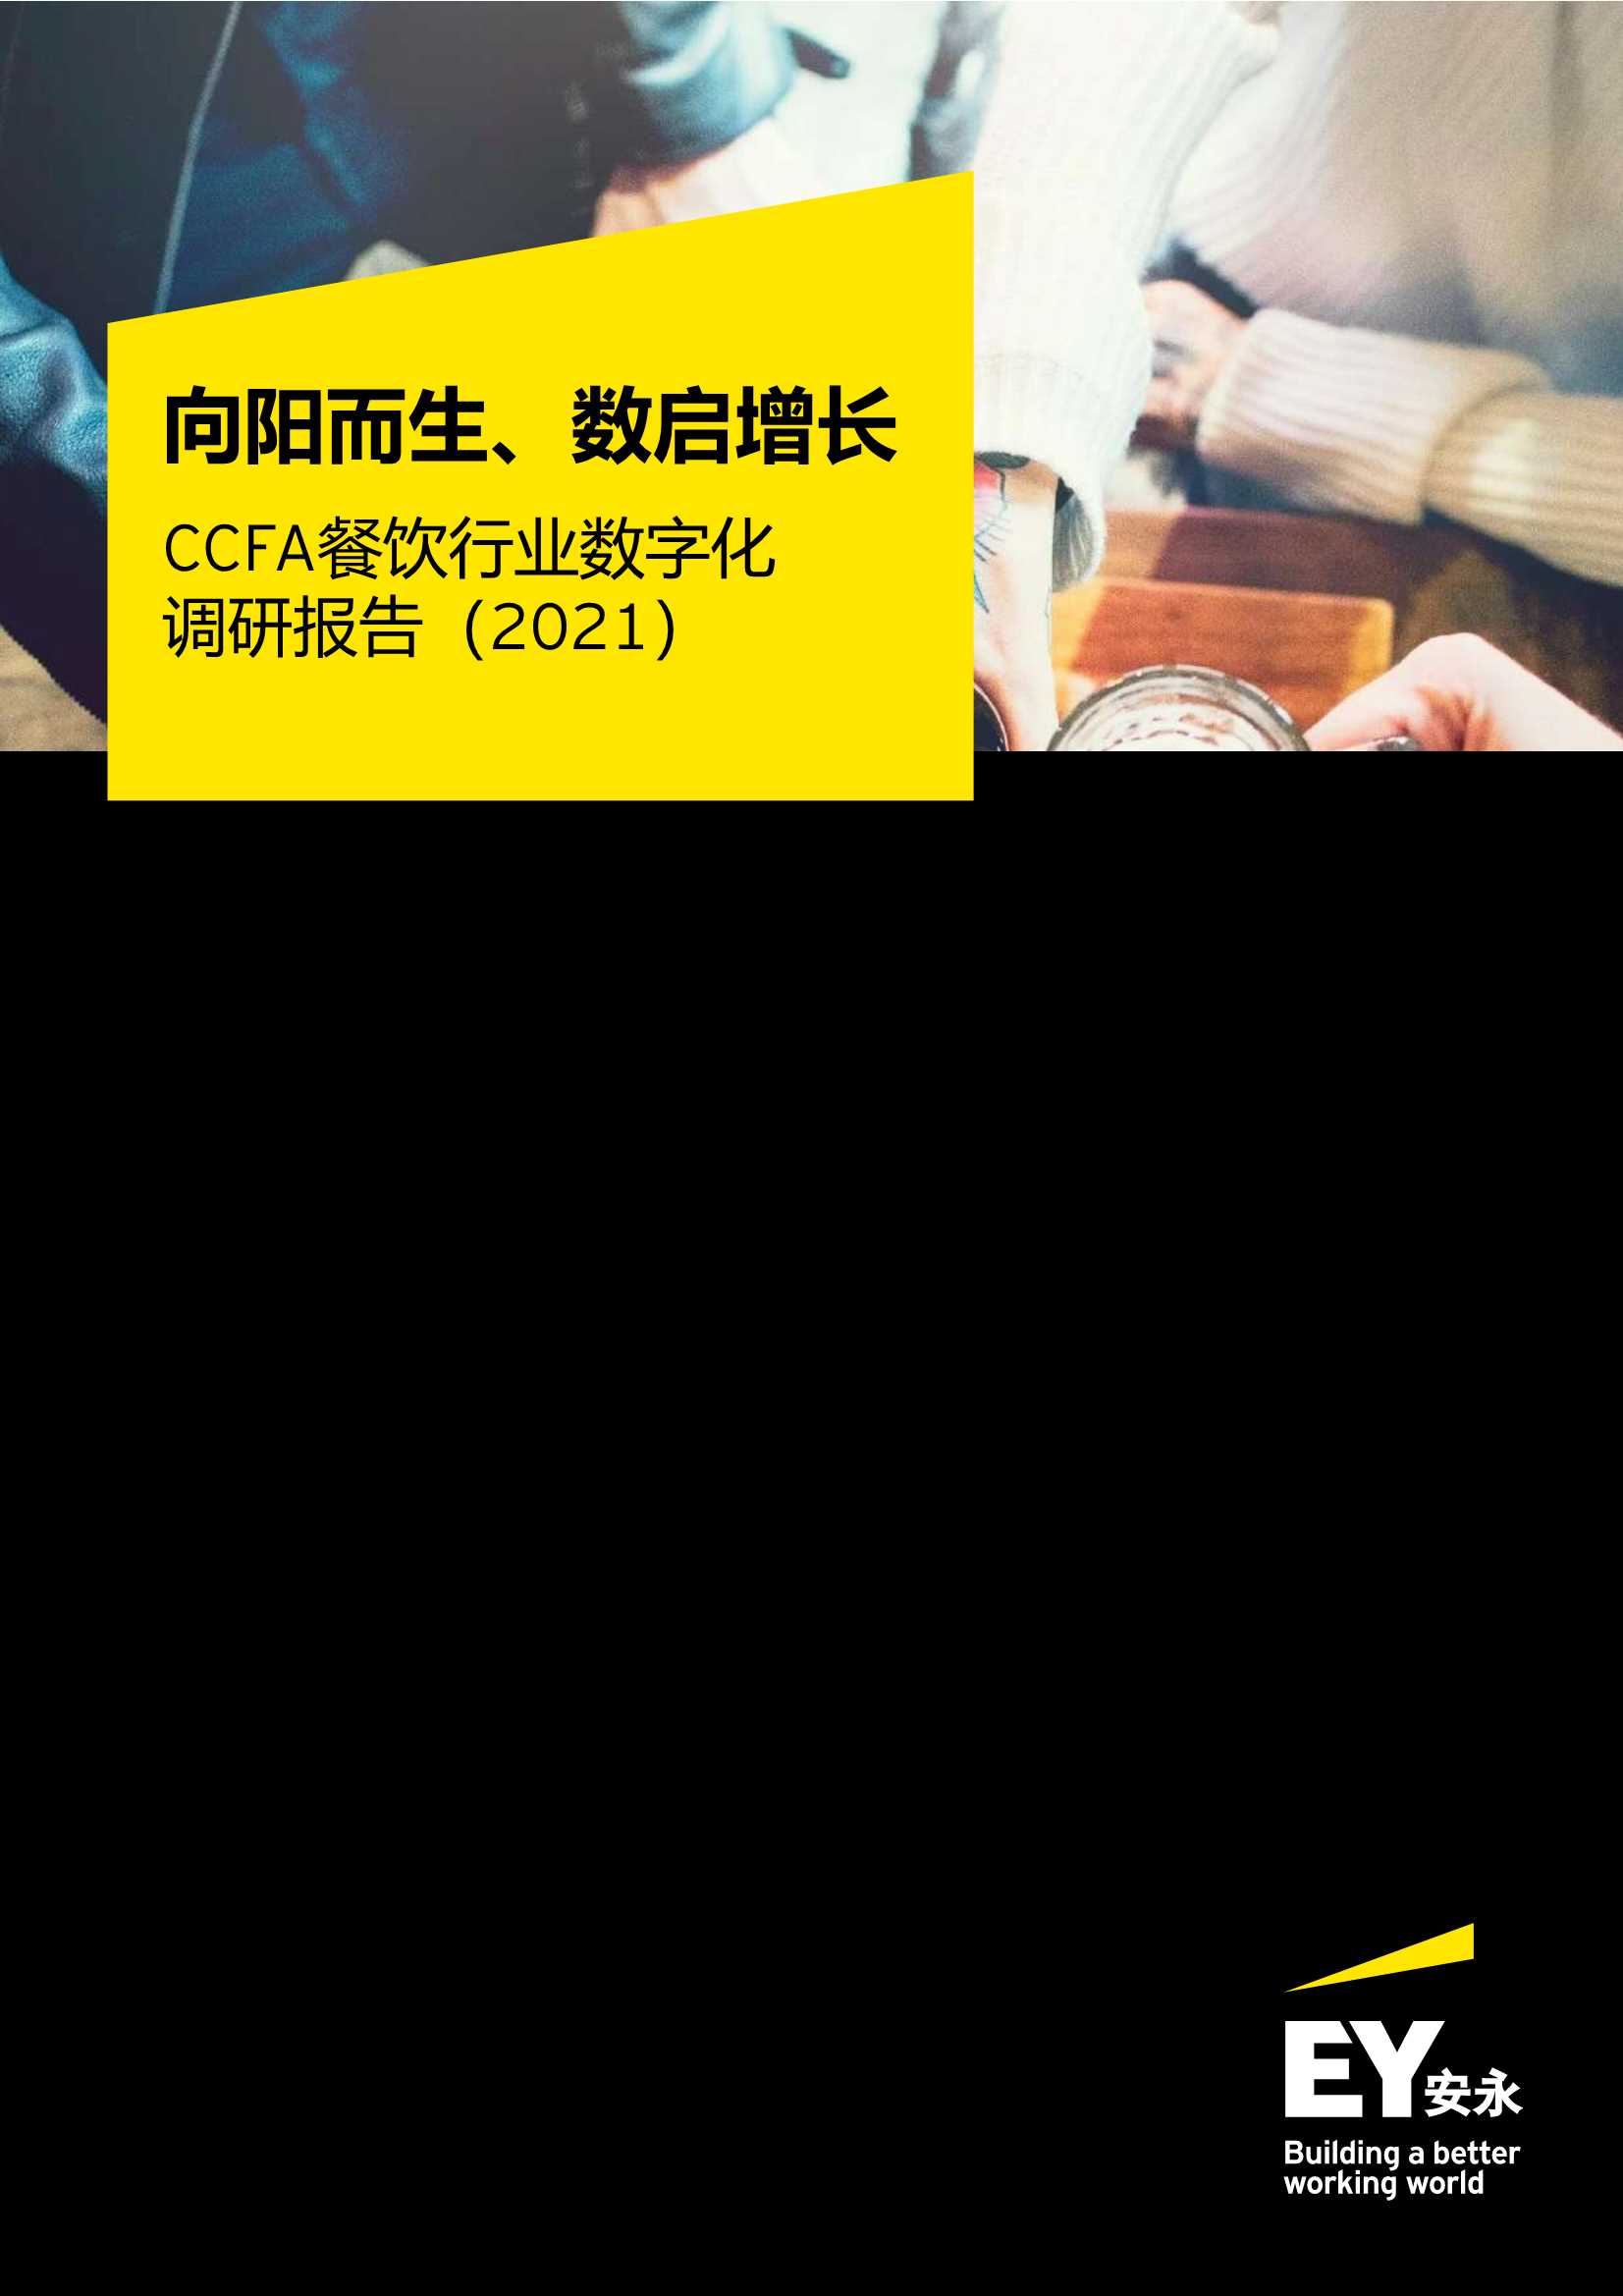 安永&CCFA-2021中国餐饮行业数字化调研报告-2021.06-28页